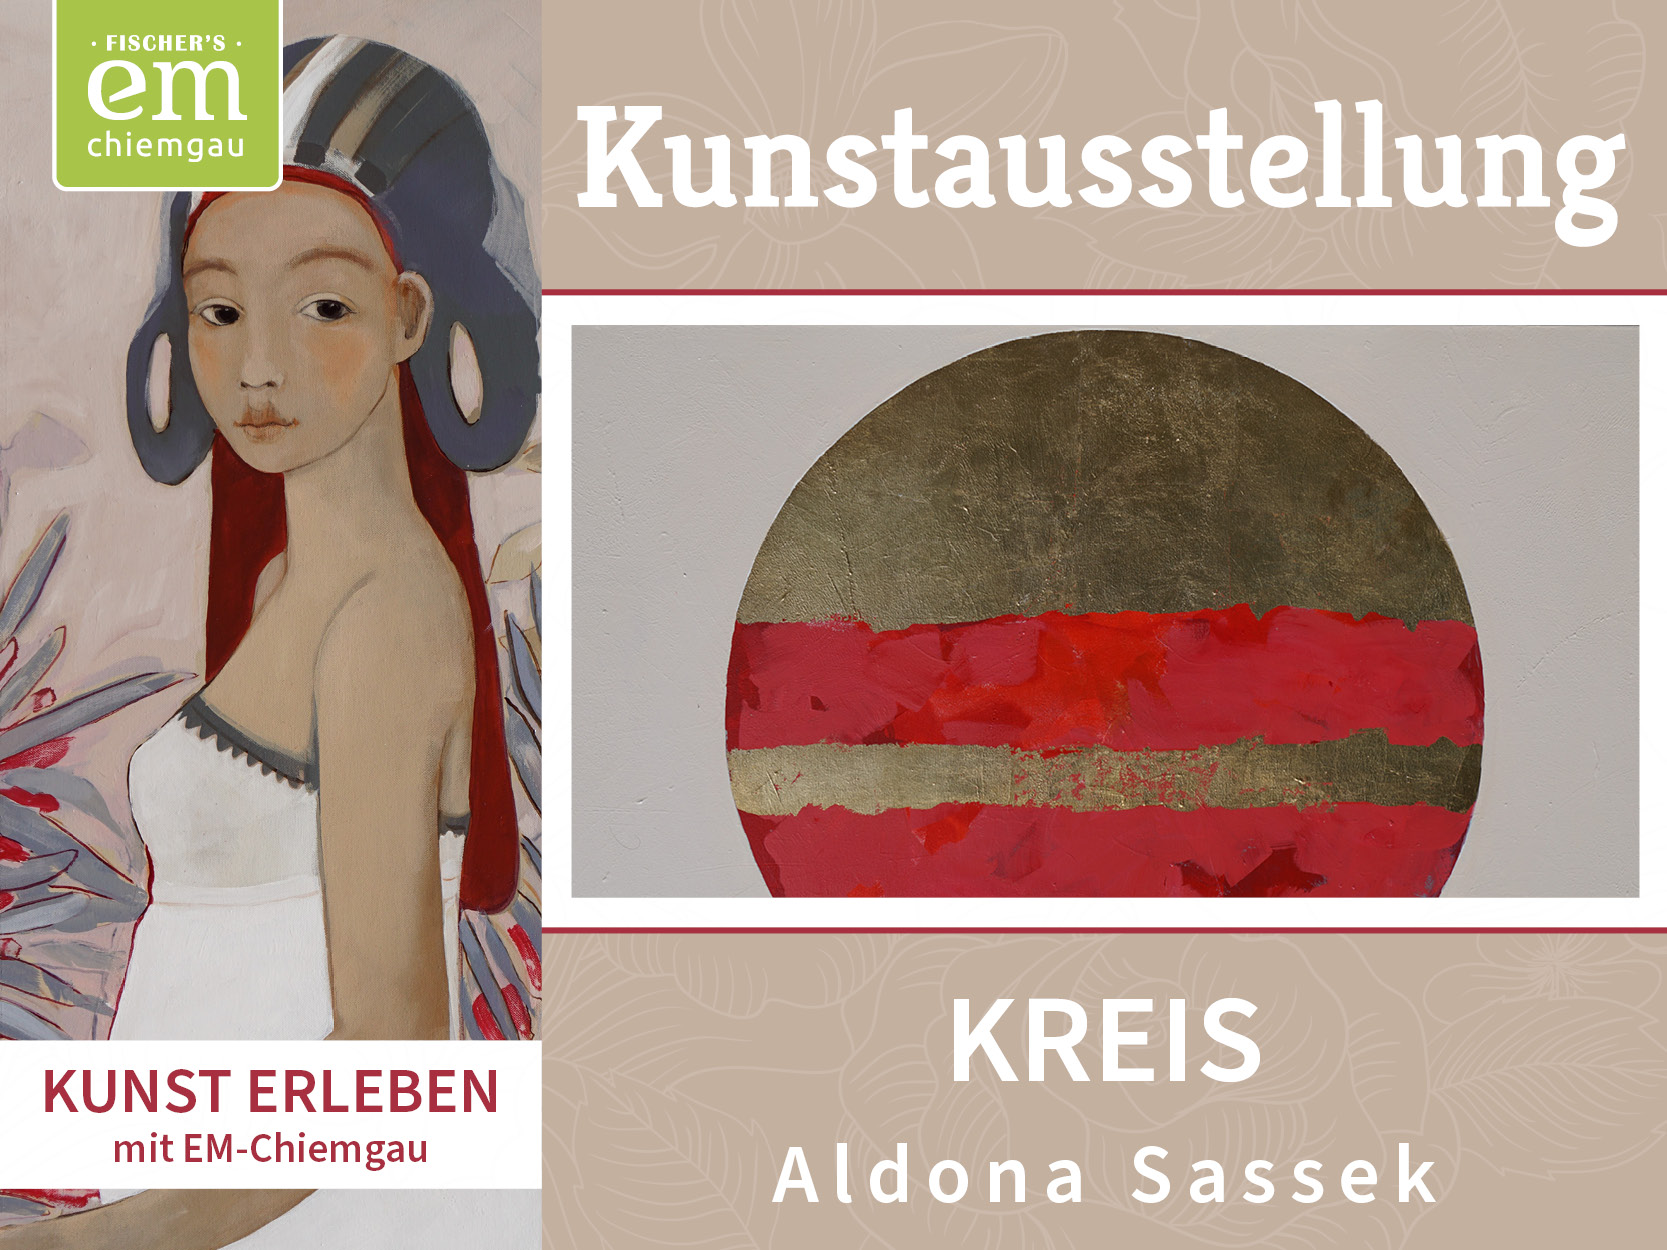 Kunstausstellung Aldona Sassek Kreis